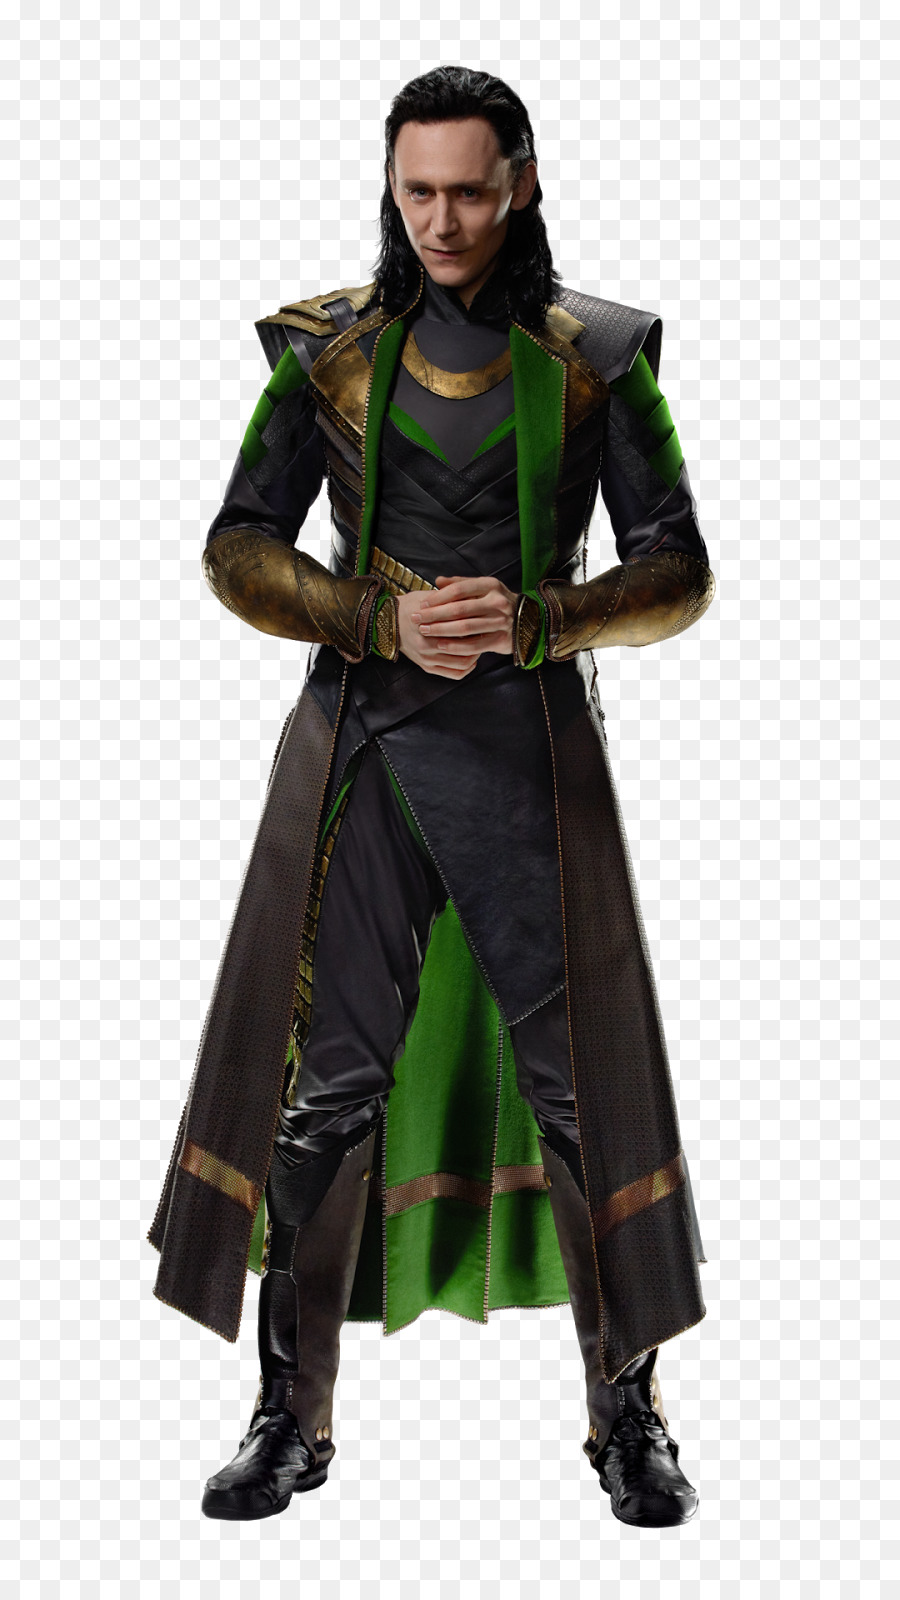 Loki Avengers: Infinity War Tom Hiddleston Captain America Thor - loki png download - 900*1600 - Free Transparent Loki png Download.